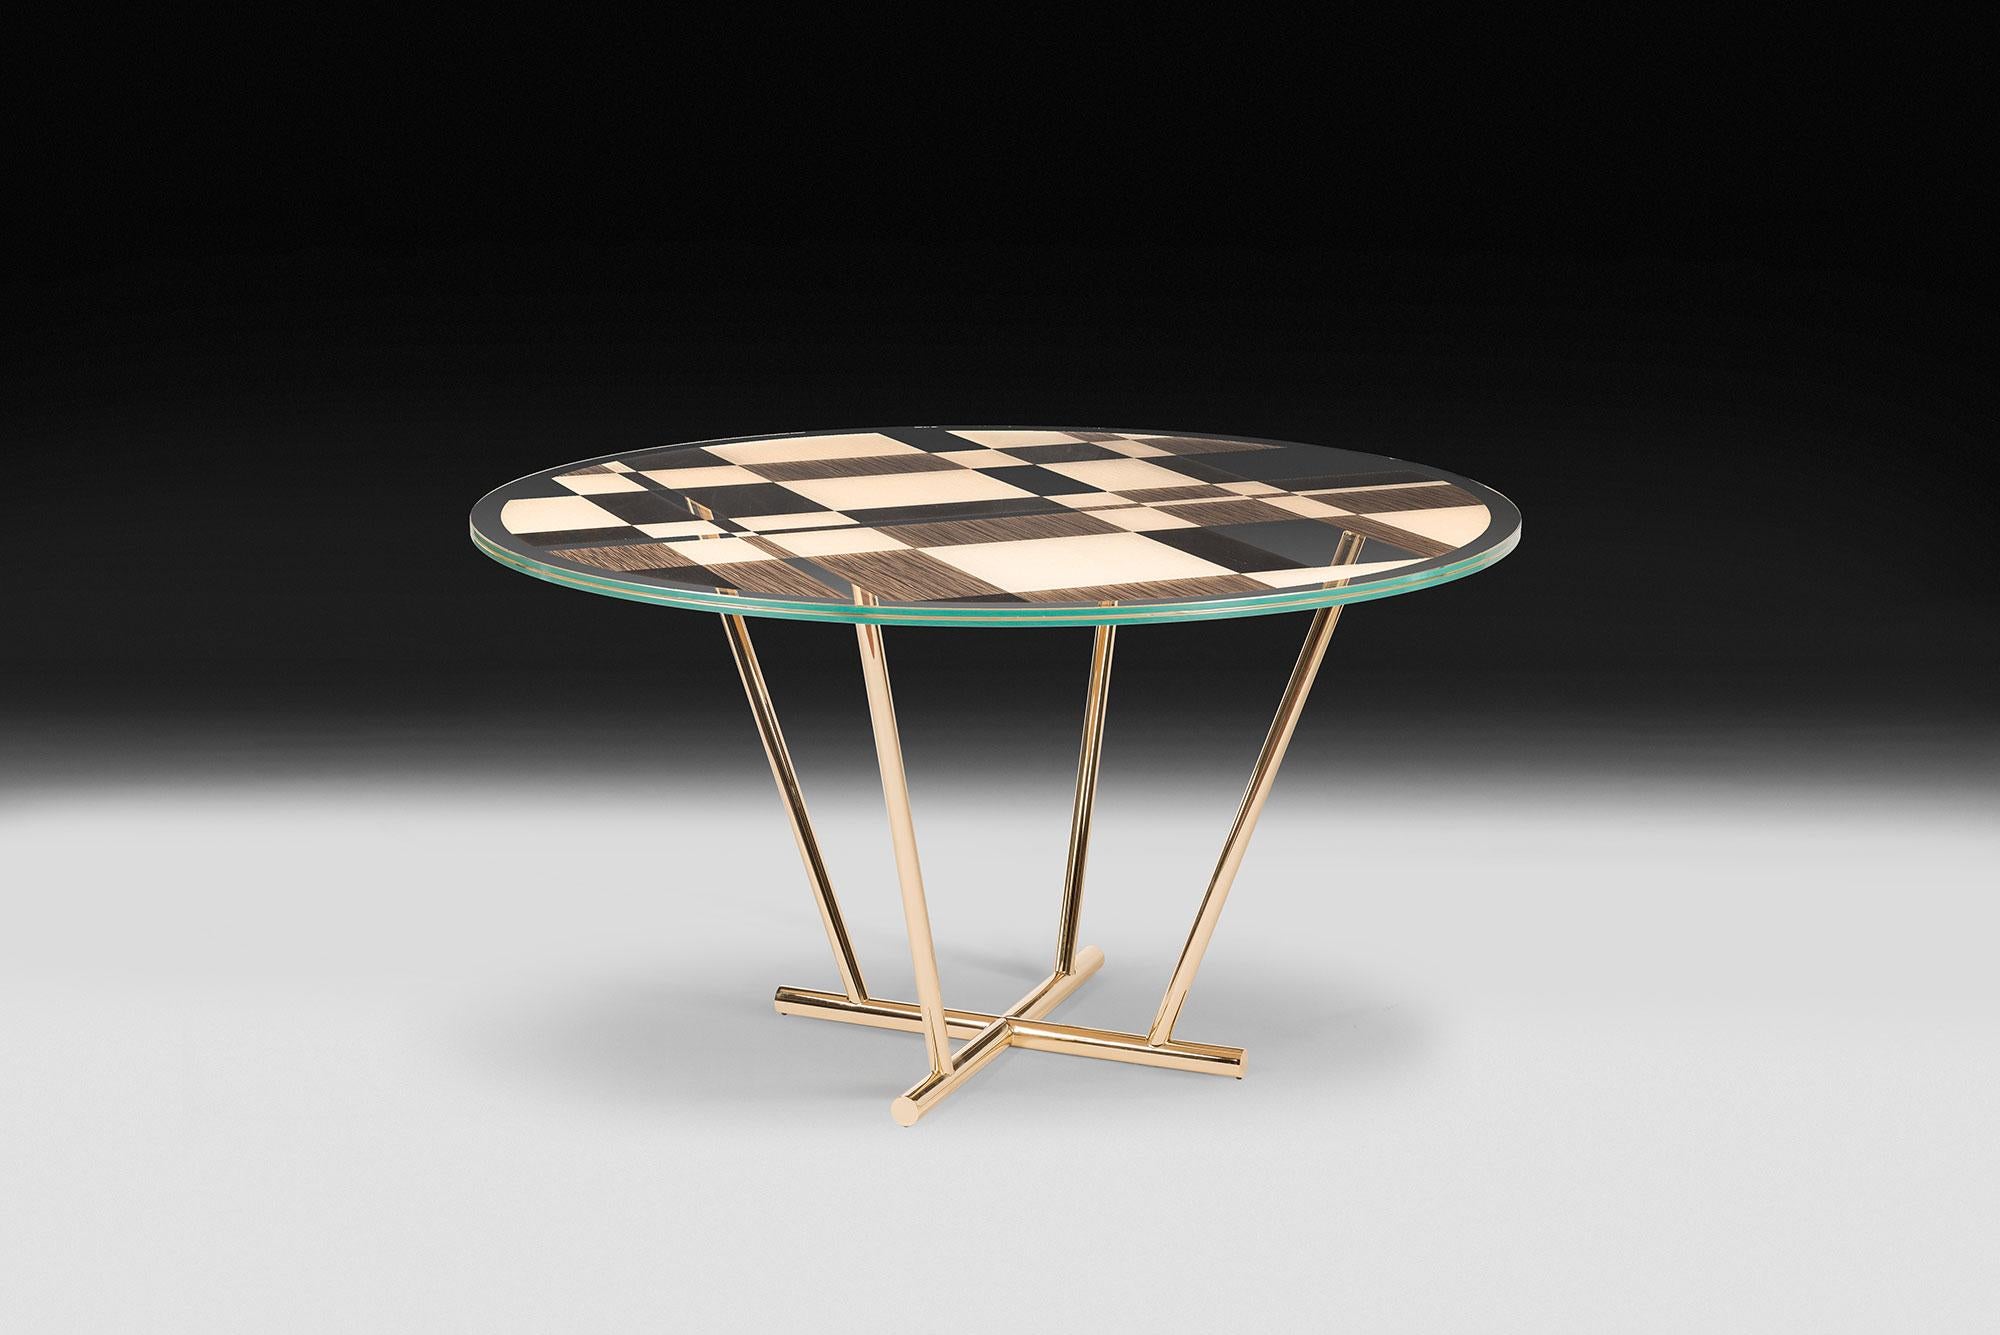 Runder Tisch in modernem, elegantem Design, inspiriert von den Bildern des berühmten niederländischen Malers Piet Mondrian und seinen üblichen Geometrien.

Als Teil der Kollektion unNatural ist sie aus der Erforschung von Naturphänomenen und der